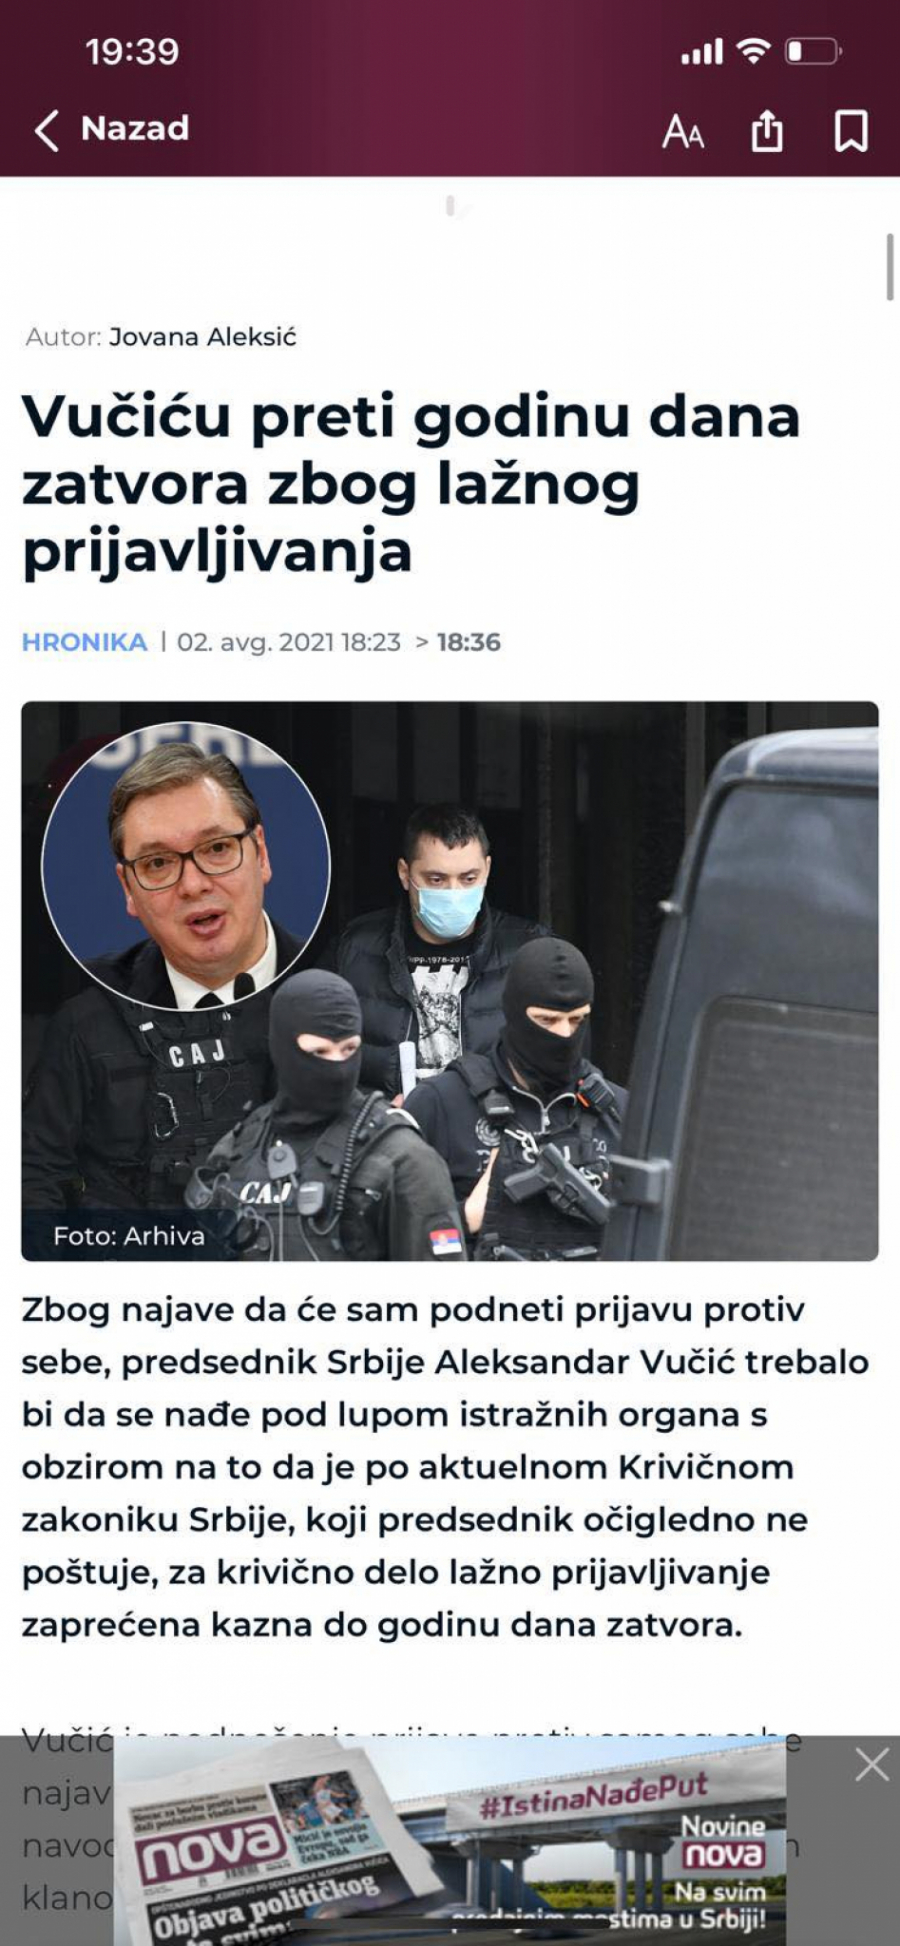 ZAO PLAN SPREMAN DUGO Vučića da strpamo u zatvor na godinu dana